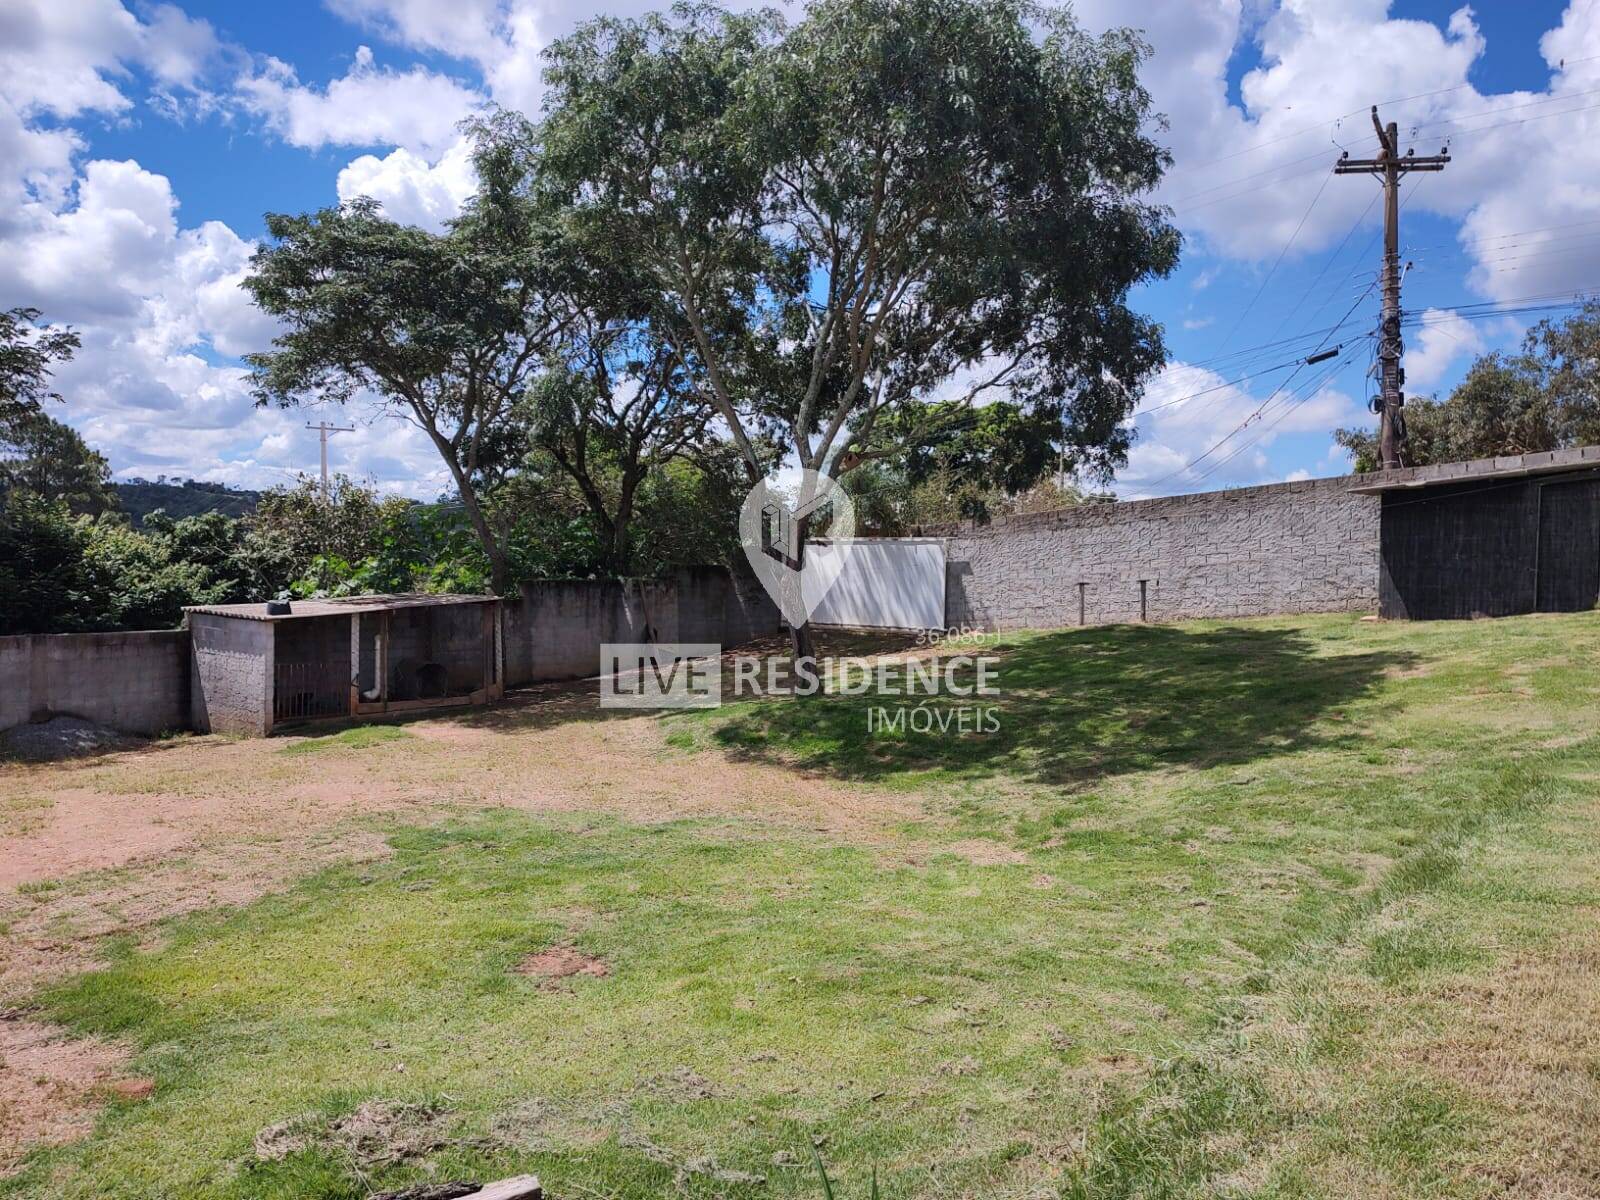 Terreno de 1.000 m²  a venda em Itatiba  Imóveis Live residence